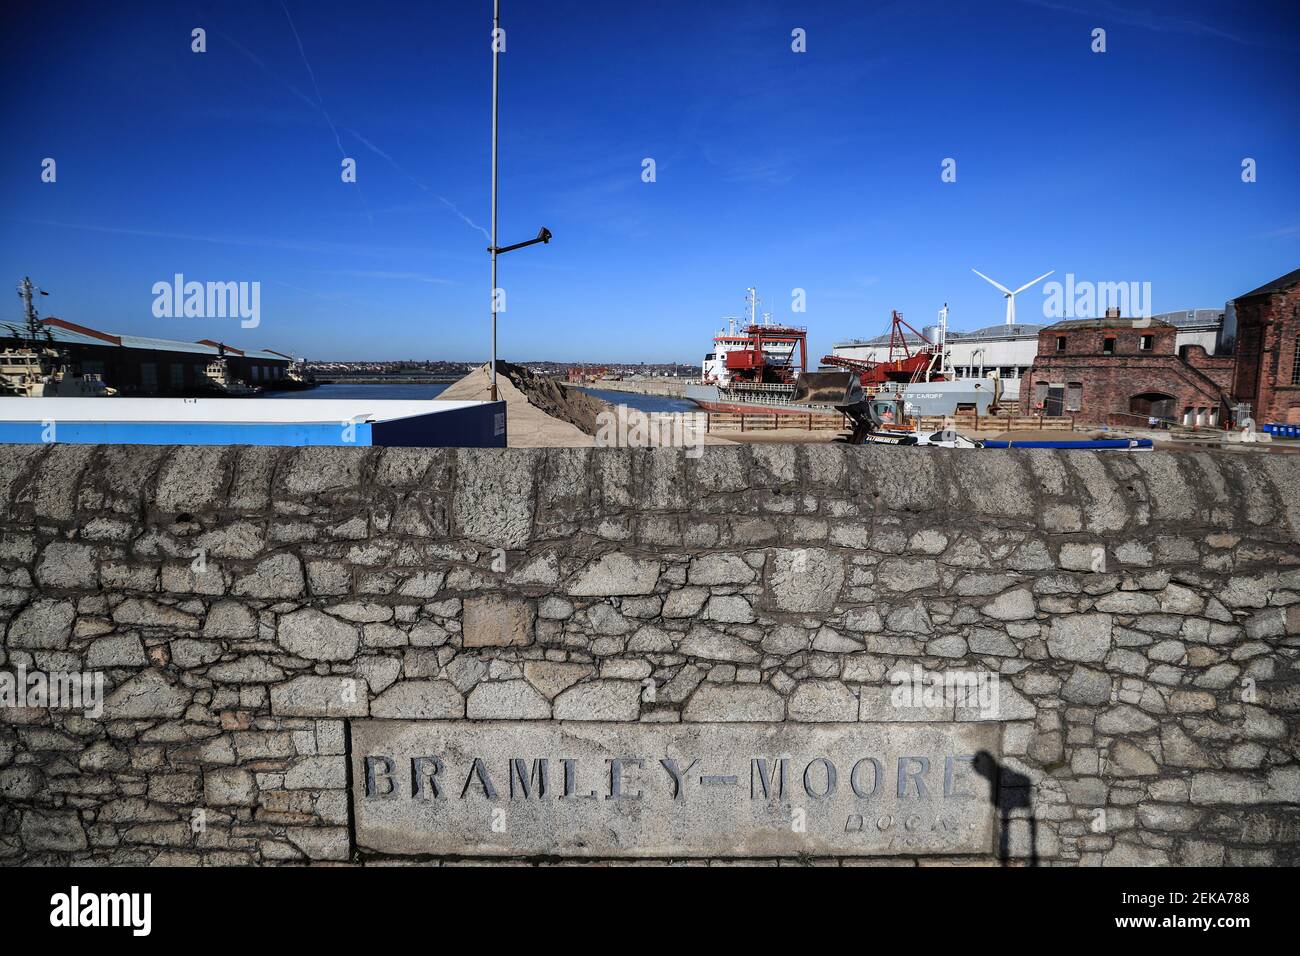 Foto del archivo fechada 24-03-2017 de una vista general de Bramley Moore Dock en Liverpool. Fecha de emisión: Martes 23 de febrero de 2021. Foto de stock